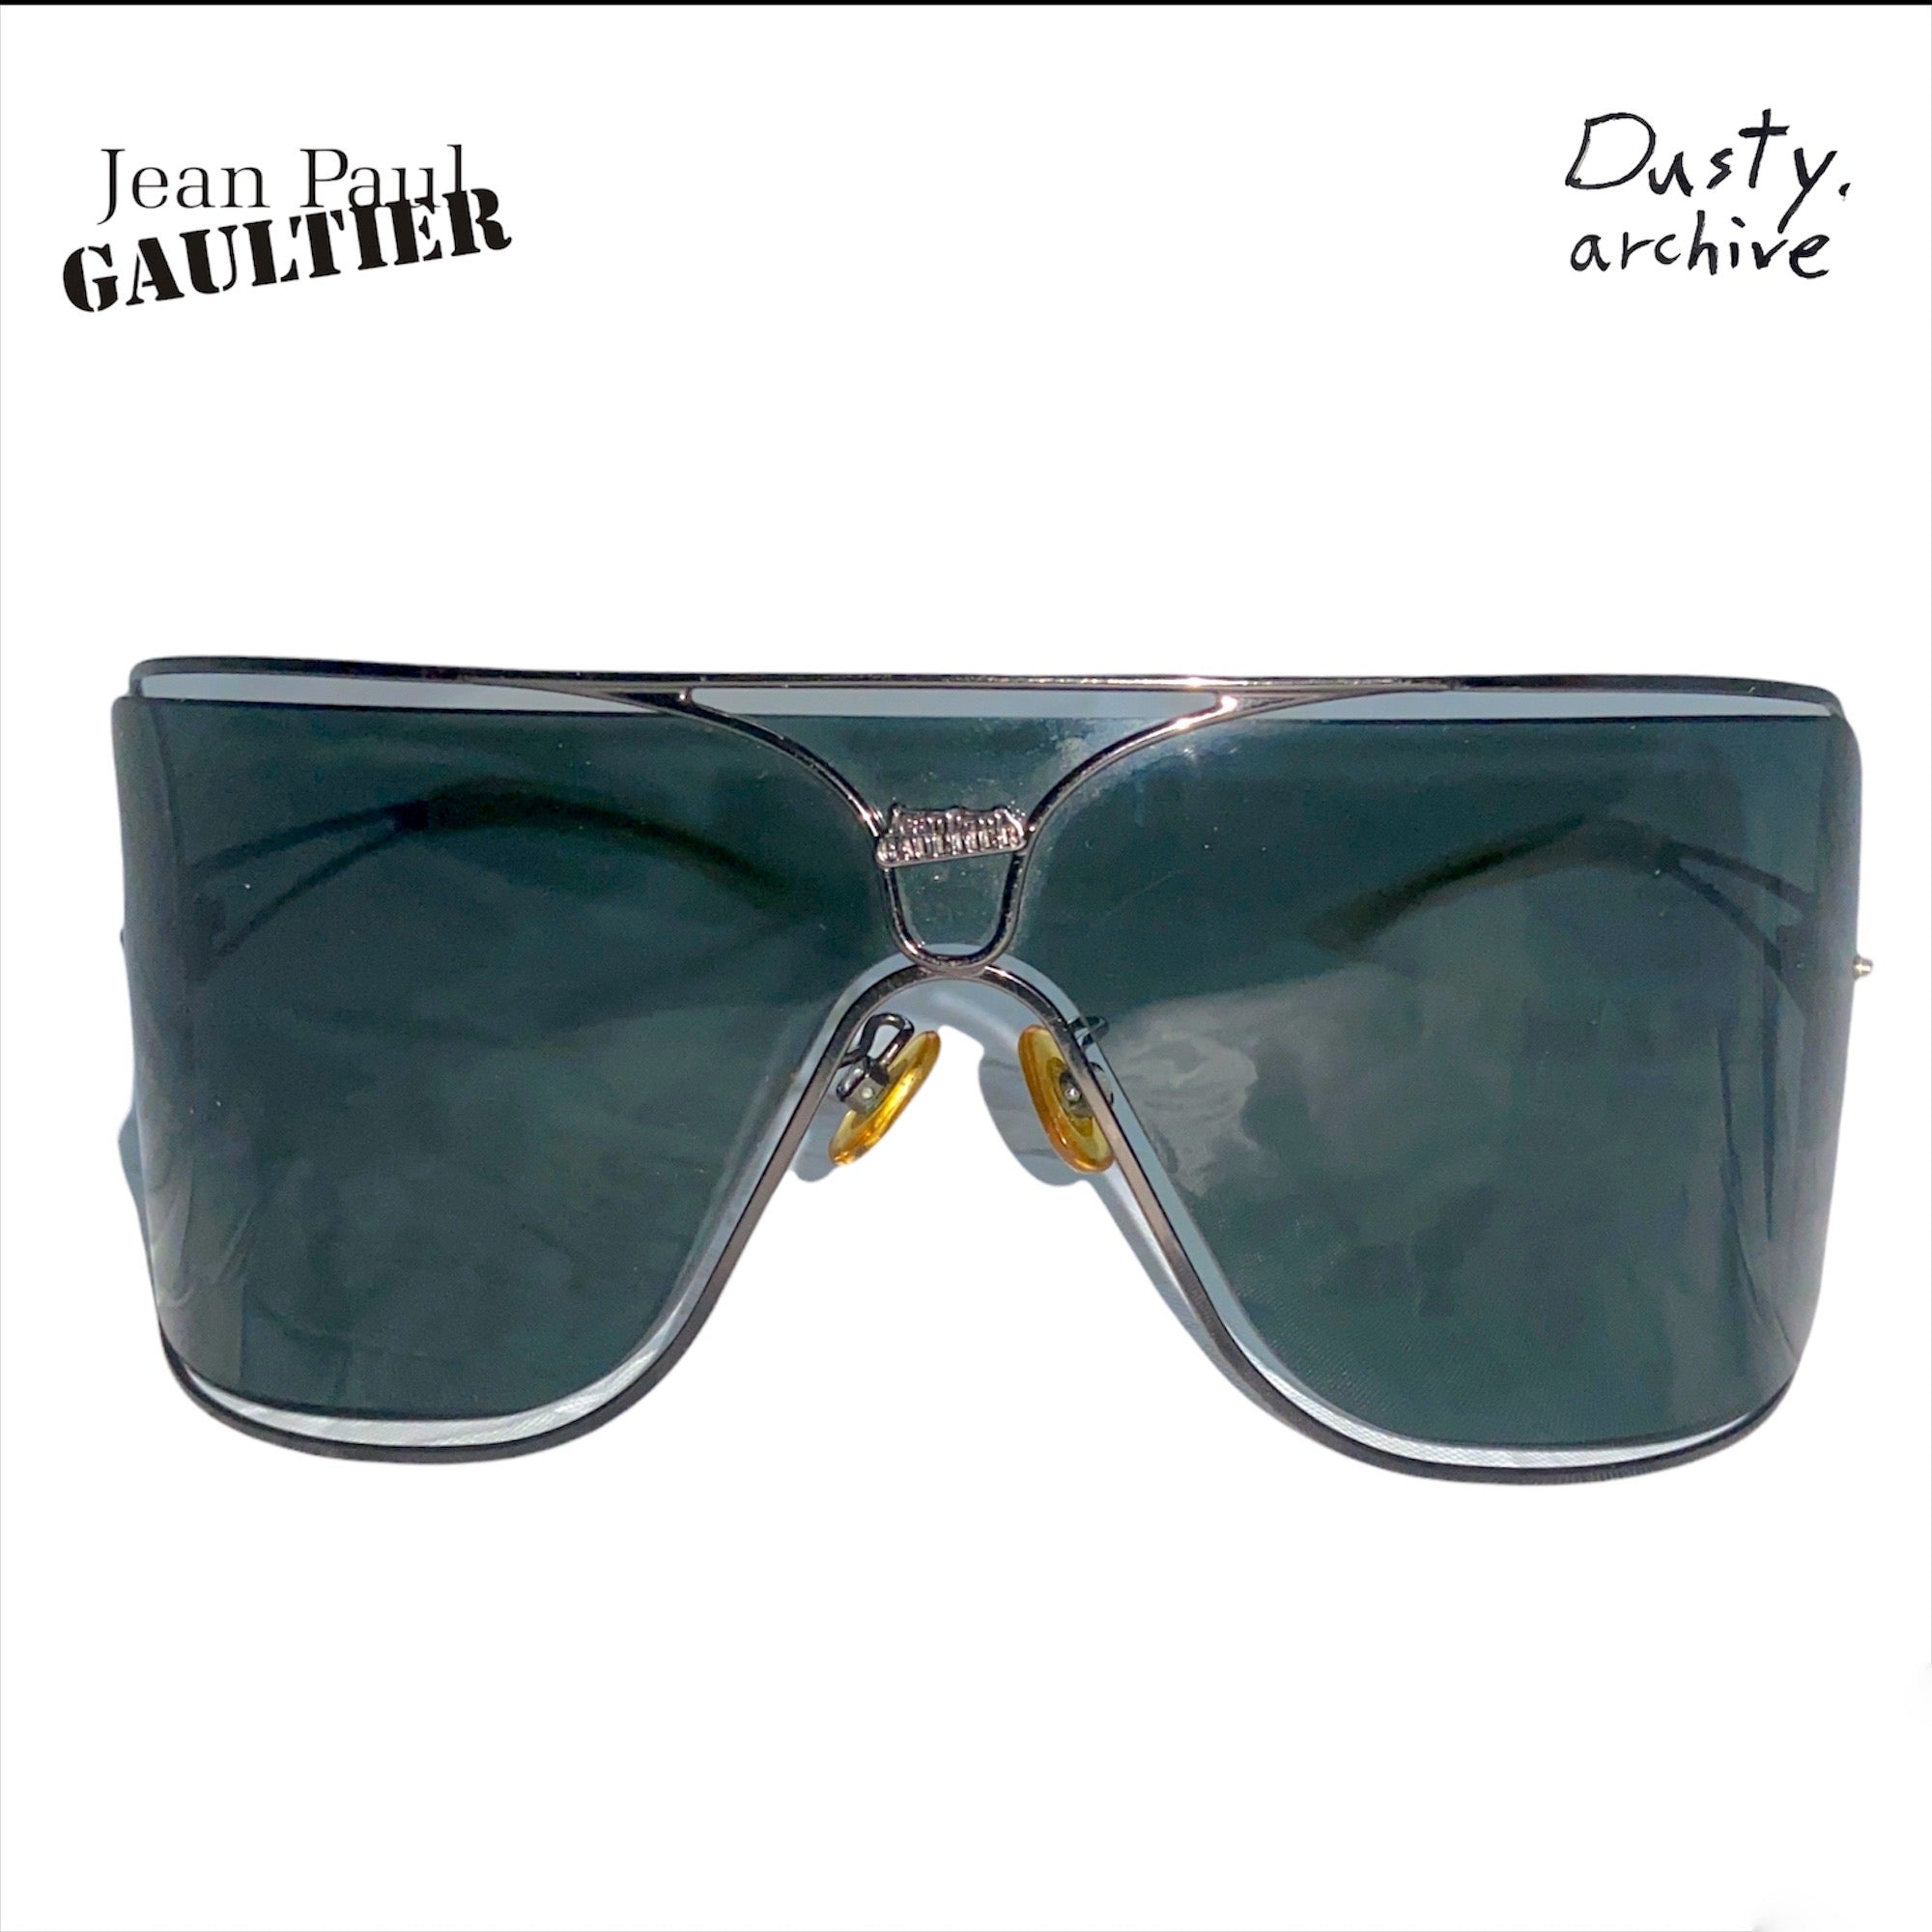 Jean paul Gaultier 90s shield sunglasses – Dusty Archive